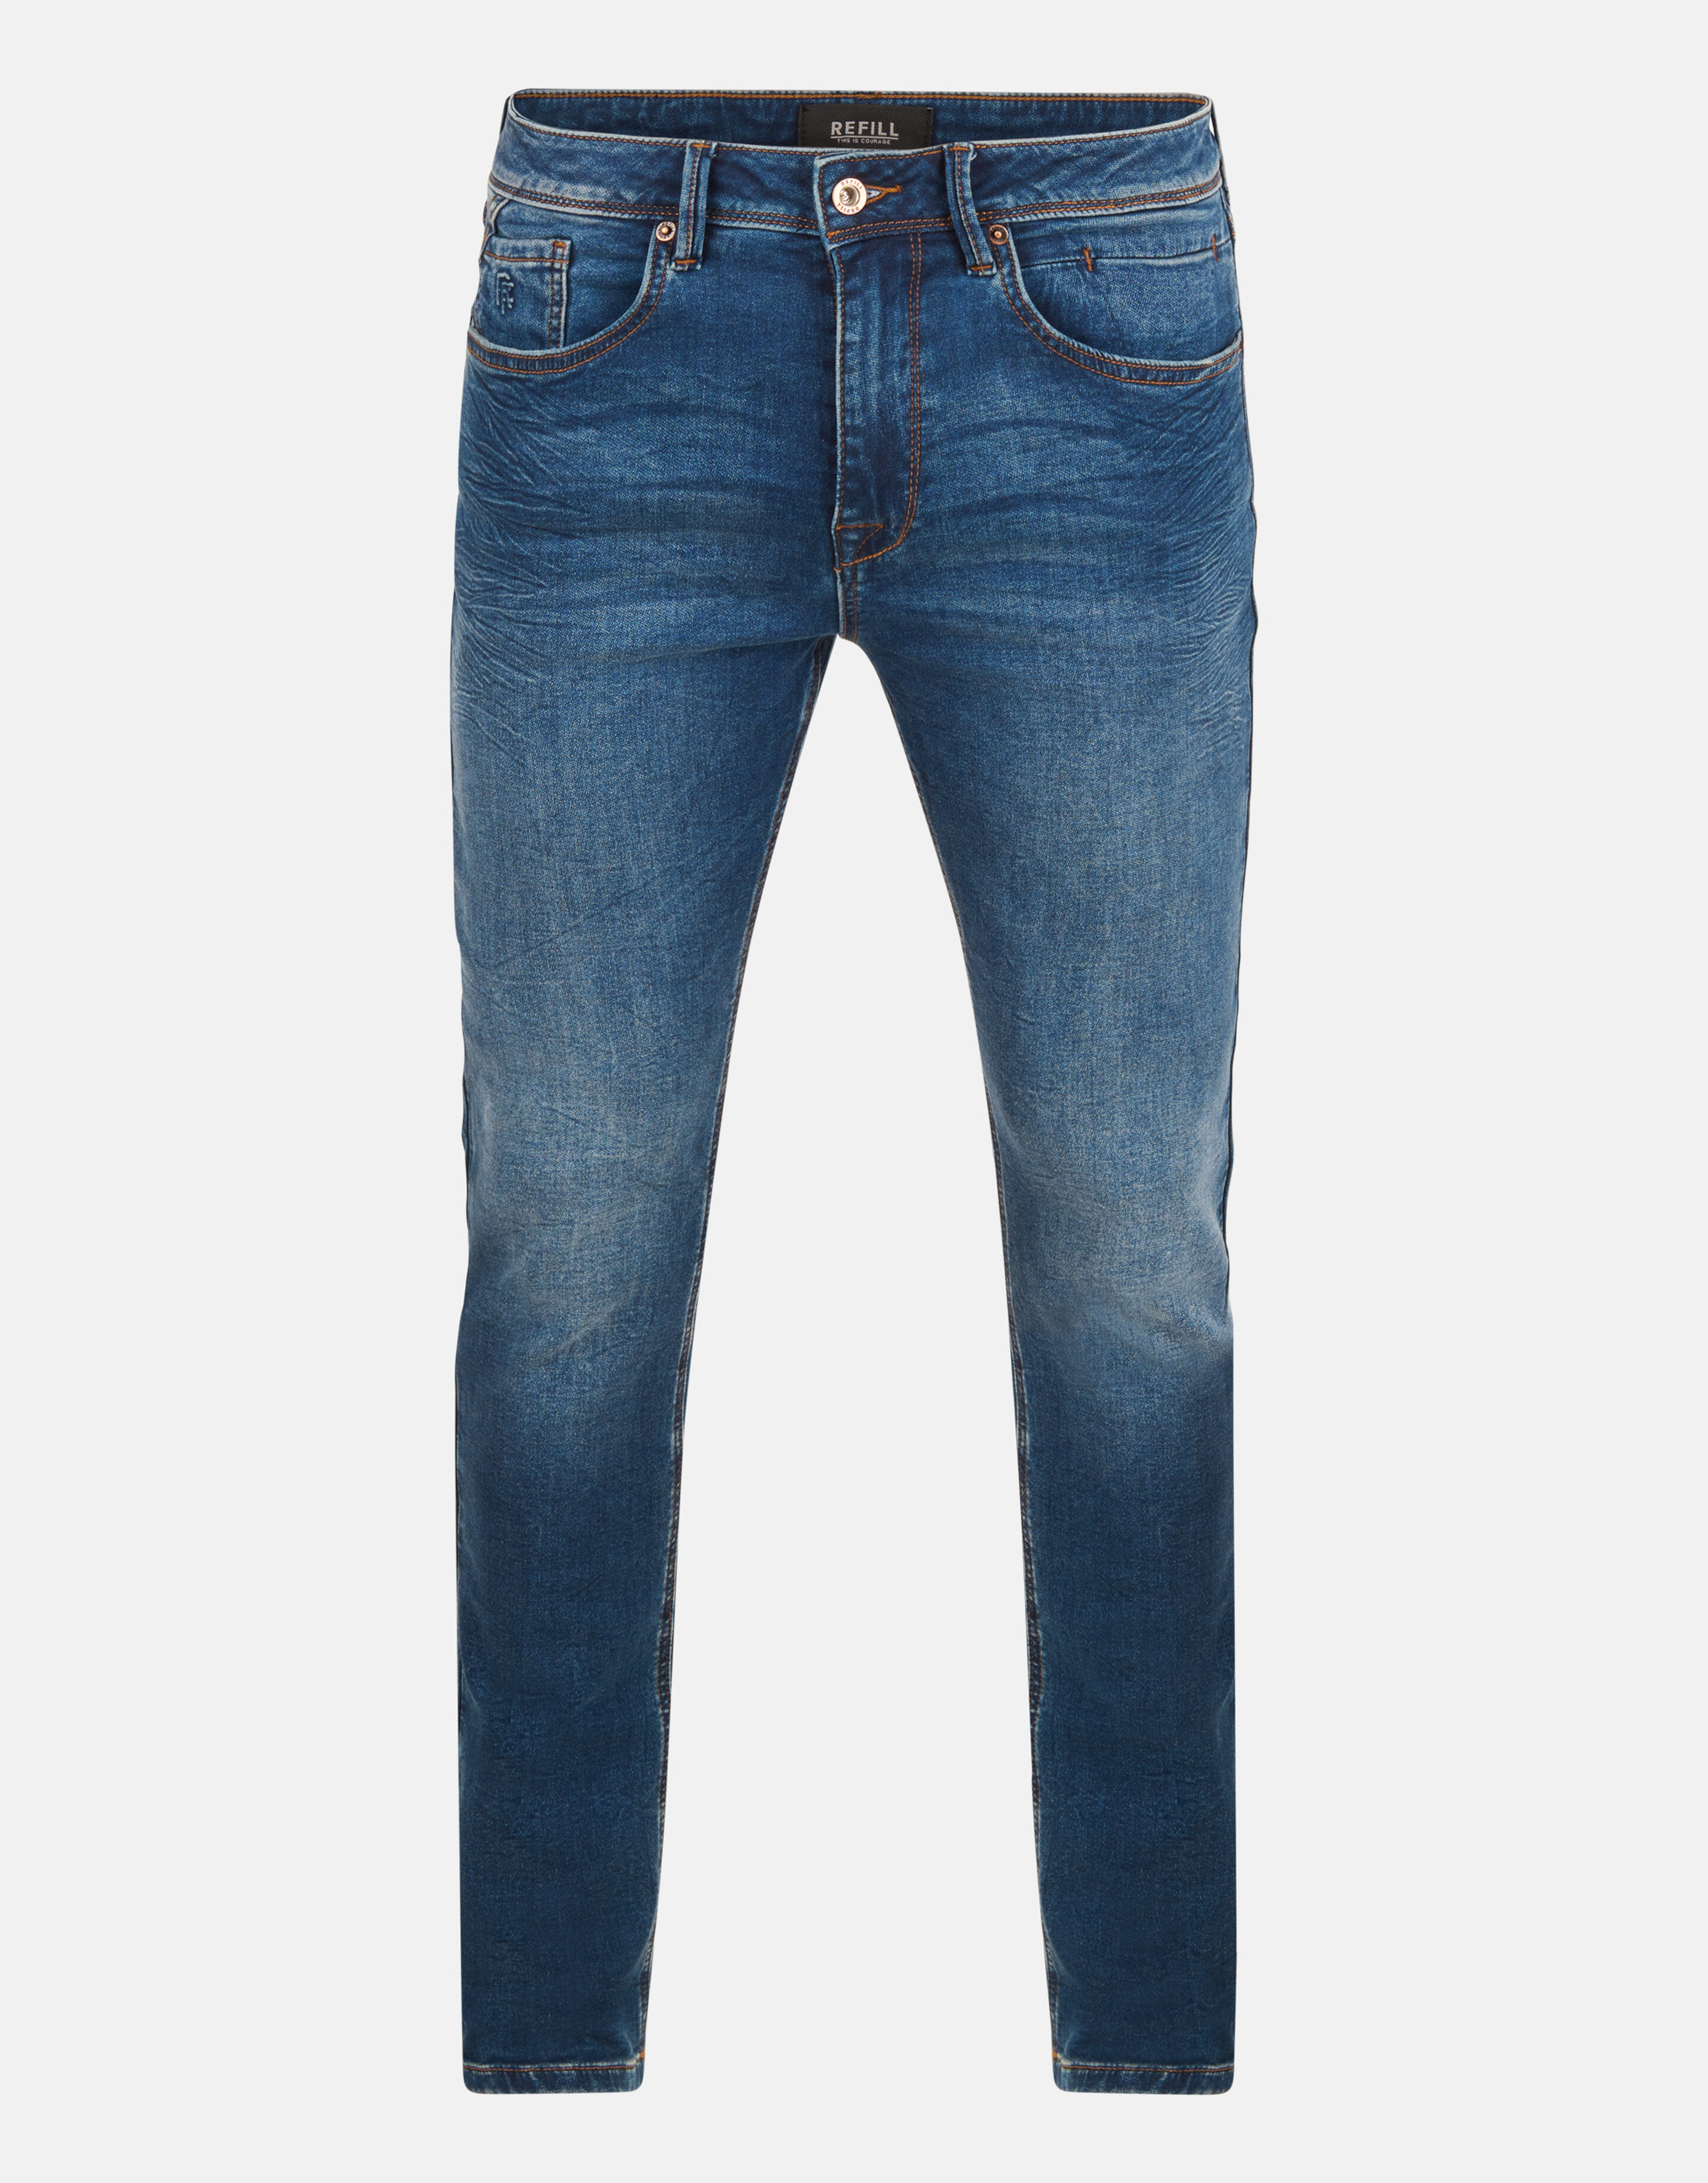 Slim Jog Jeans Donkerblauw L34 Refill